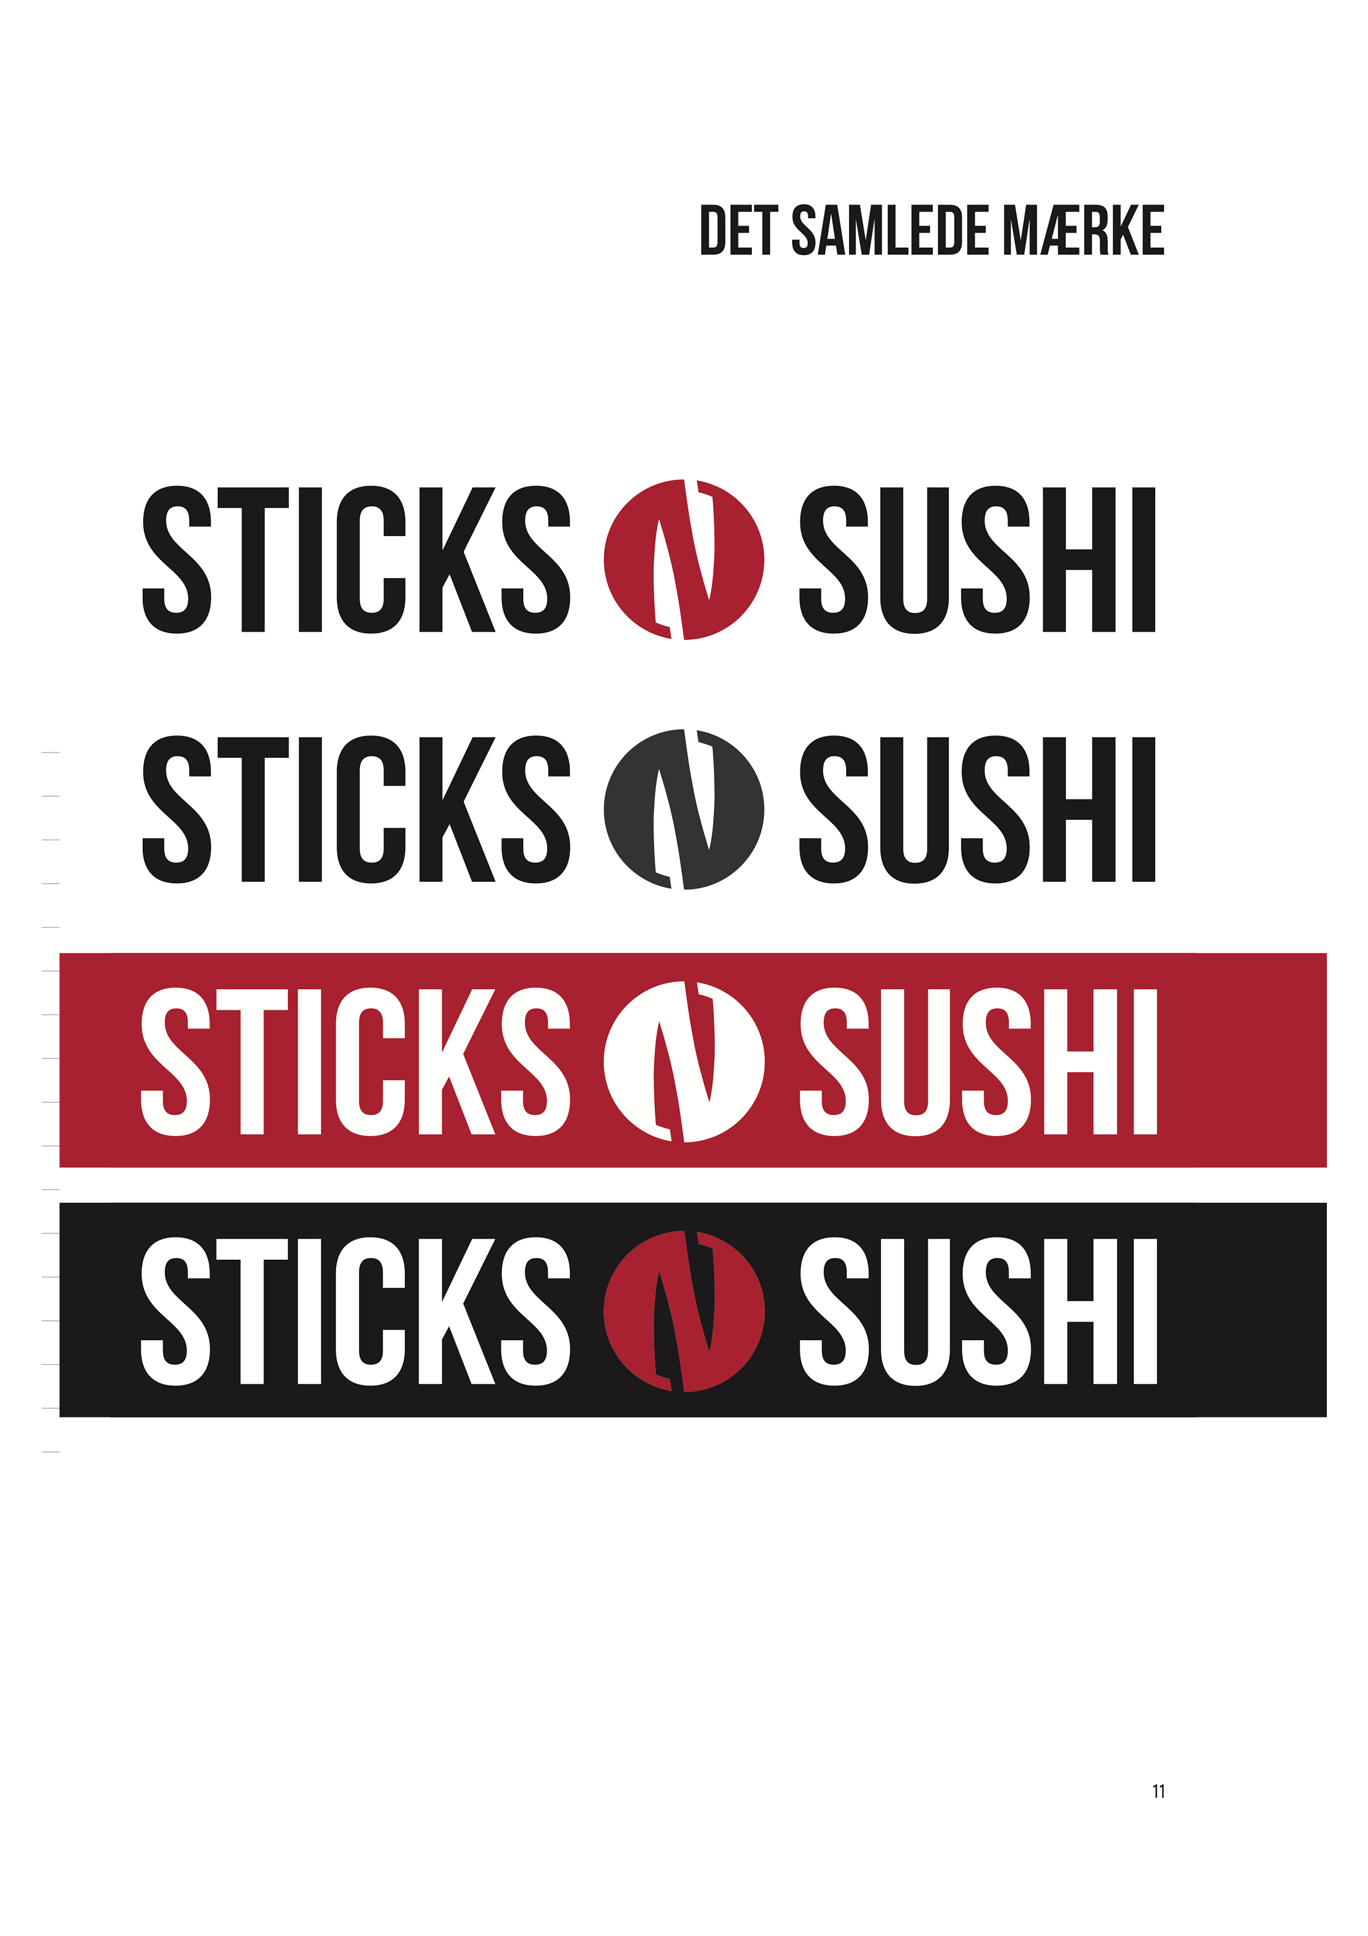 sticks-n-sushi-logo-versions